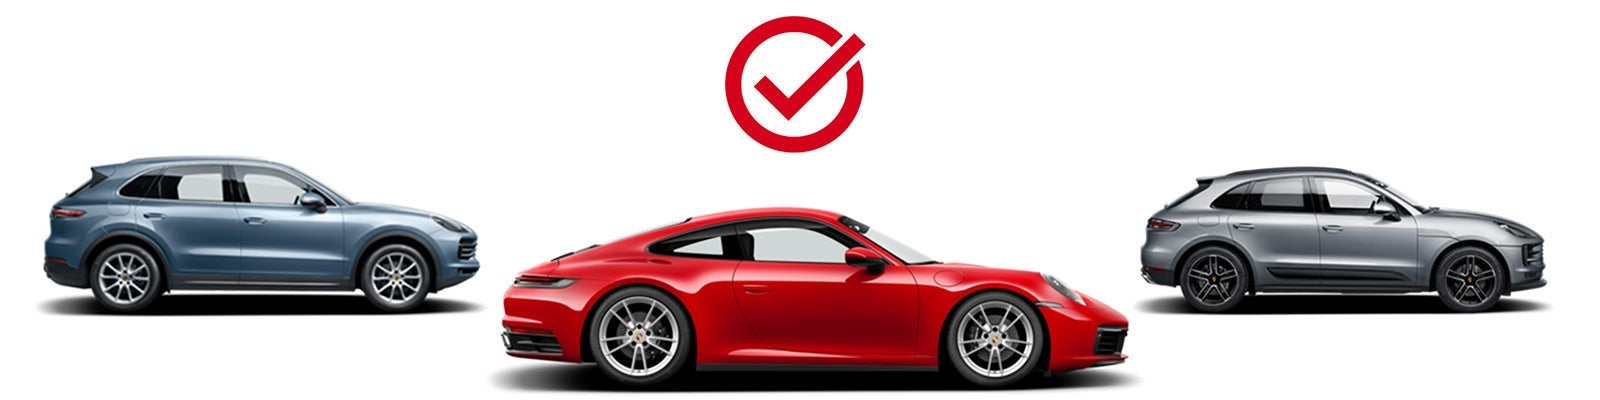 Choose Your Porsche | Porsche South Orlando in Orlando FL